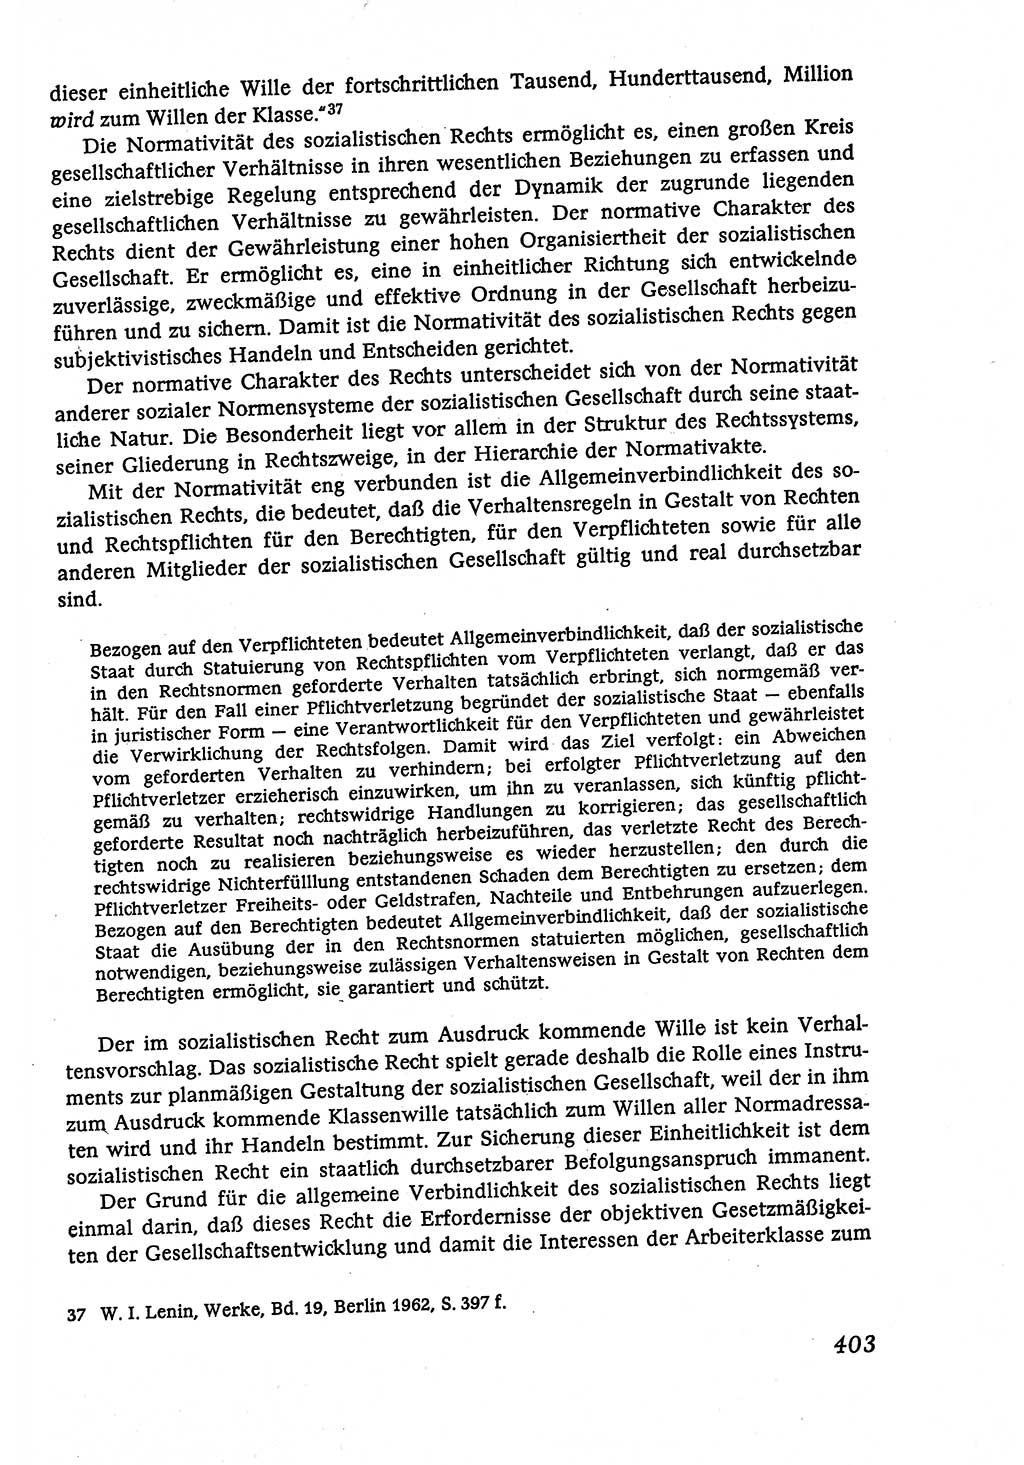 Marxistisch-leninistische (ML) Staats- und Rechtstheorie [Deutsche Demokratische Republik (DDR)], Lehrbuch 1980, Seite 403 (ML St.-R.-Th. DDR Lb. 1980, S. 403)